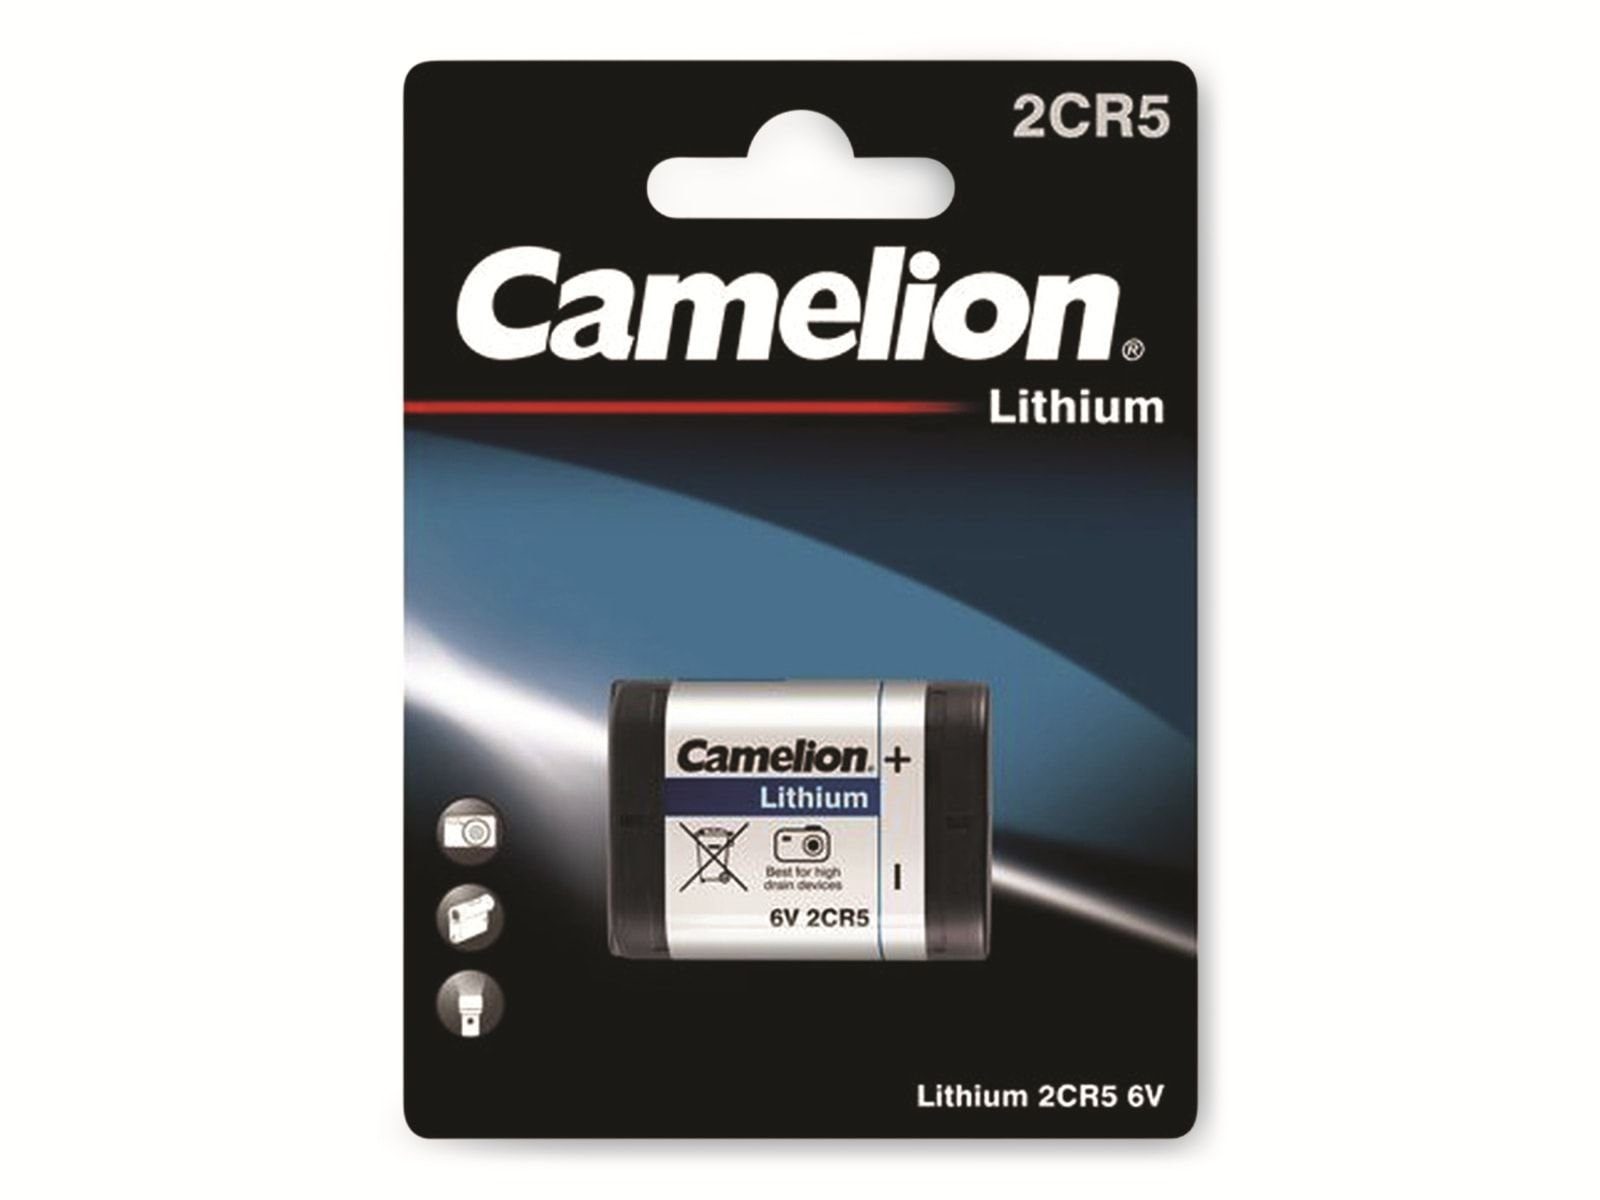 Camelion CAMELION Lithium-Batterie CR 2CR5 1 Stück Batterie